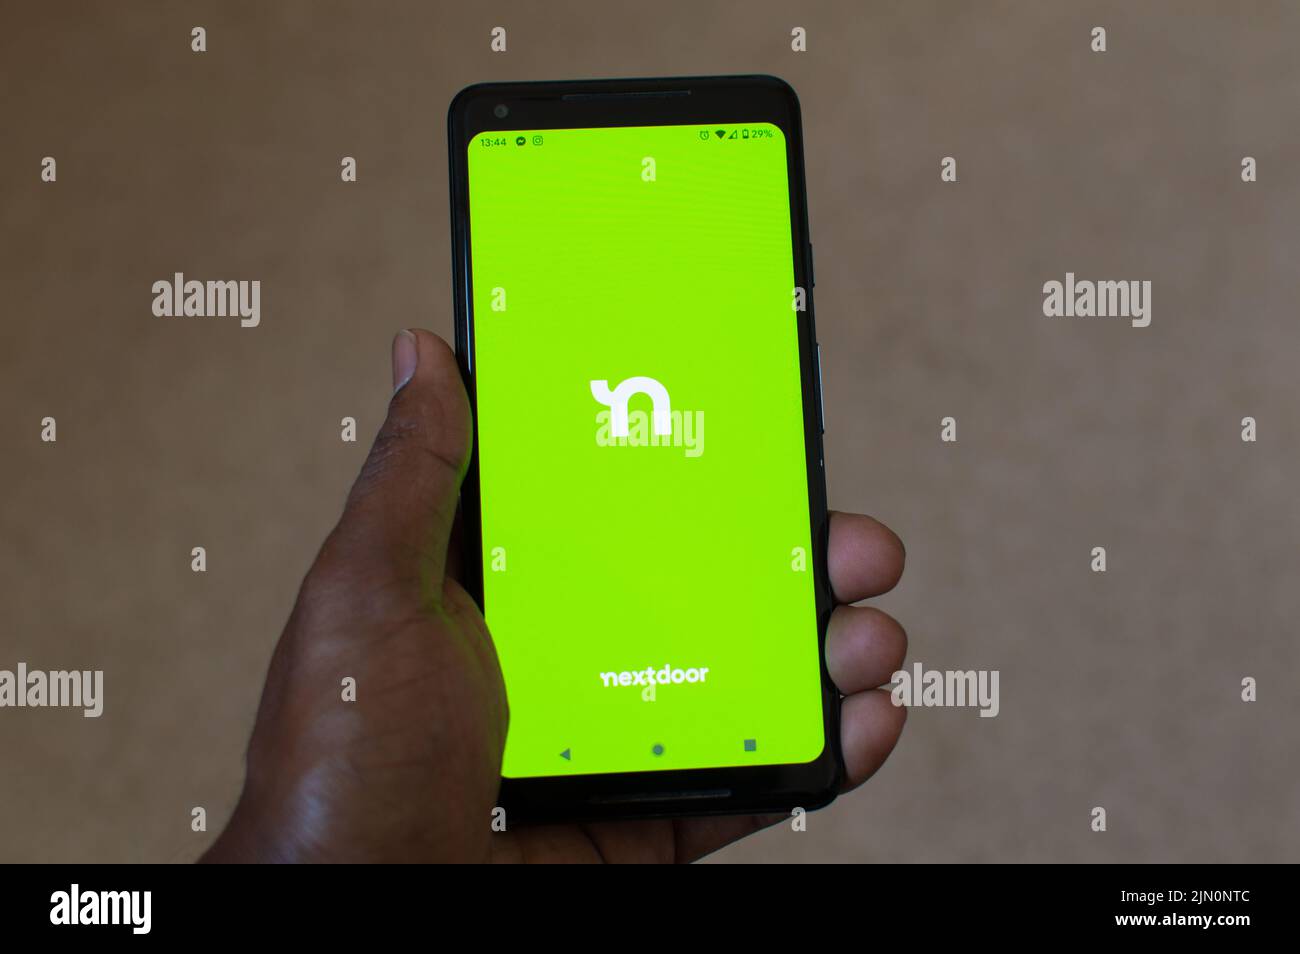 Nextdoor app on smartphone Stock Photo